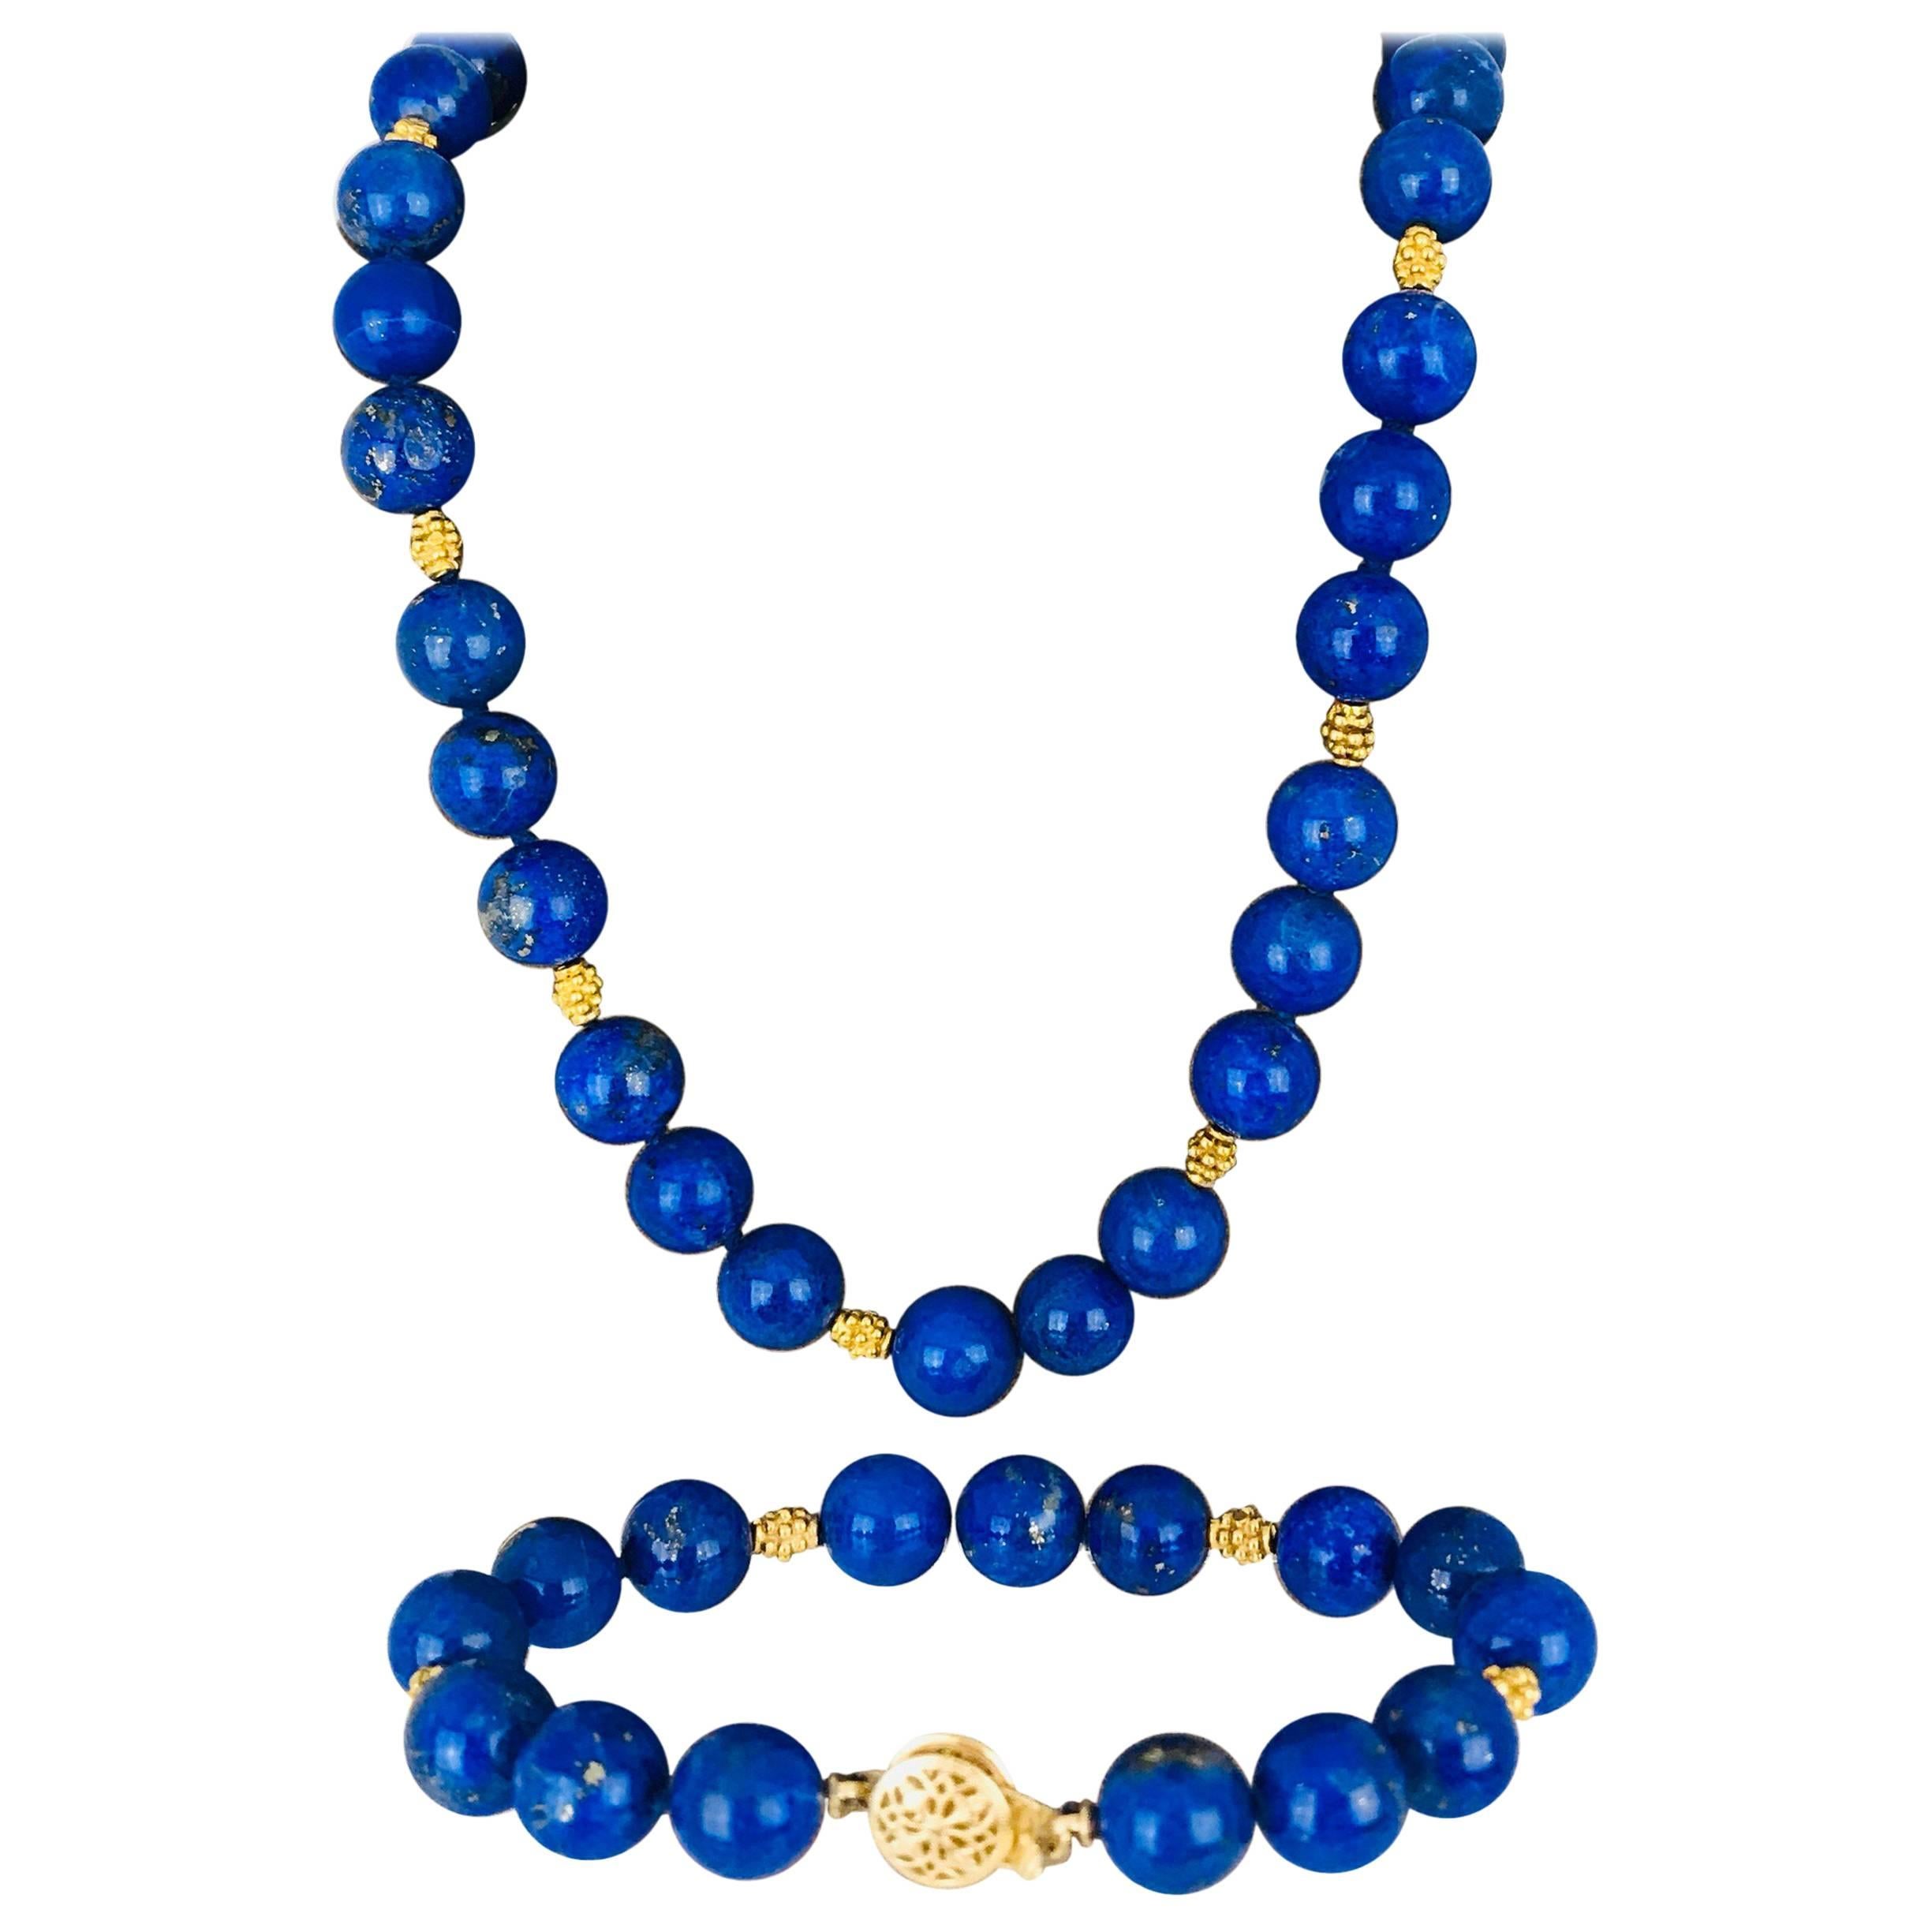 Lapis Lazuli Necklace and Bracelet, Contemporary 14 Karat Nugget Accents